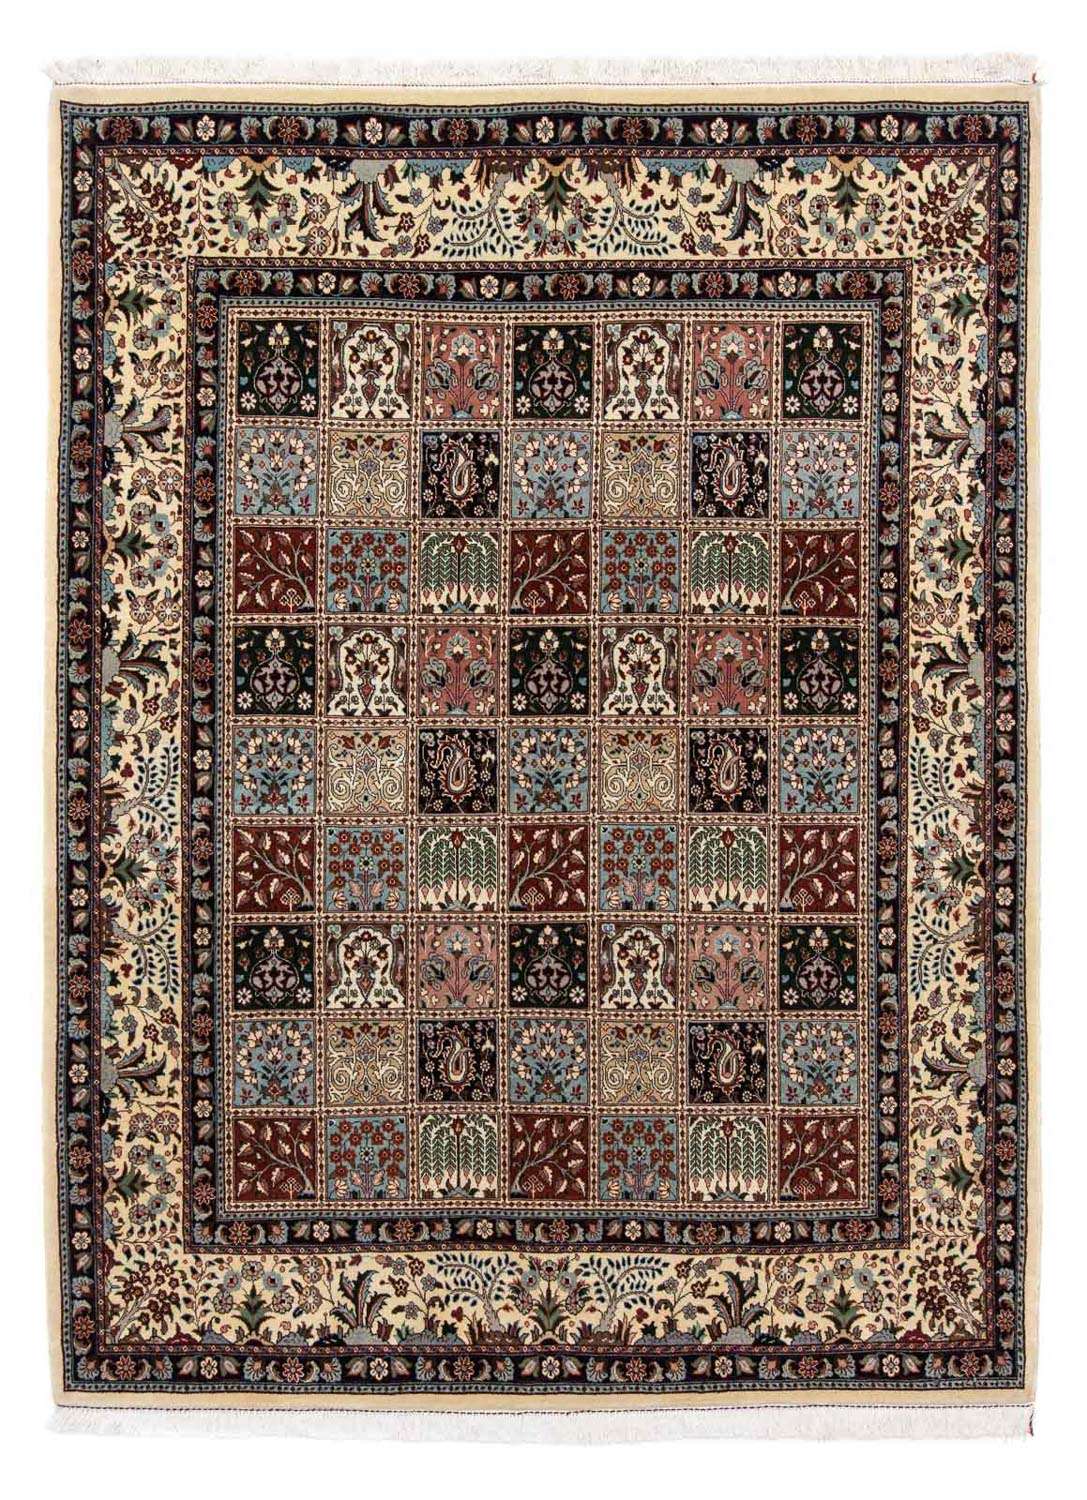 Persisk teppe - klassisk - 242 x 184 cm - flerfarget